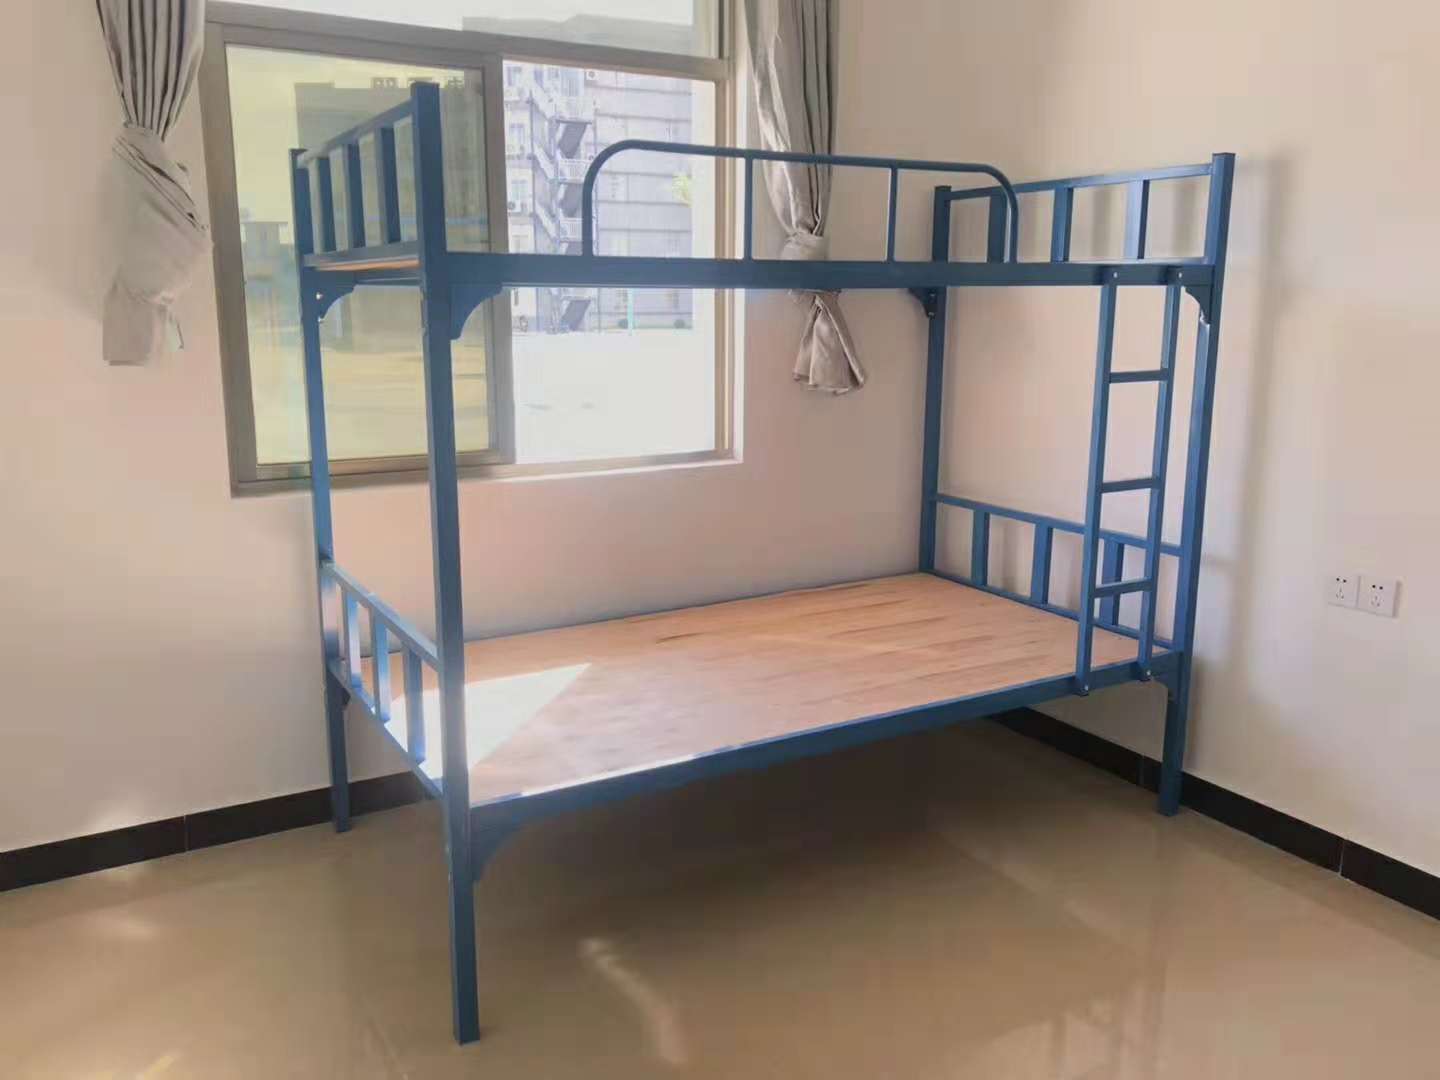 上下铺床高低床双层床铁床 双层子母床图片